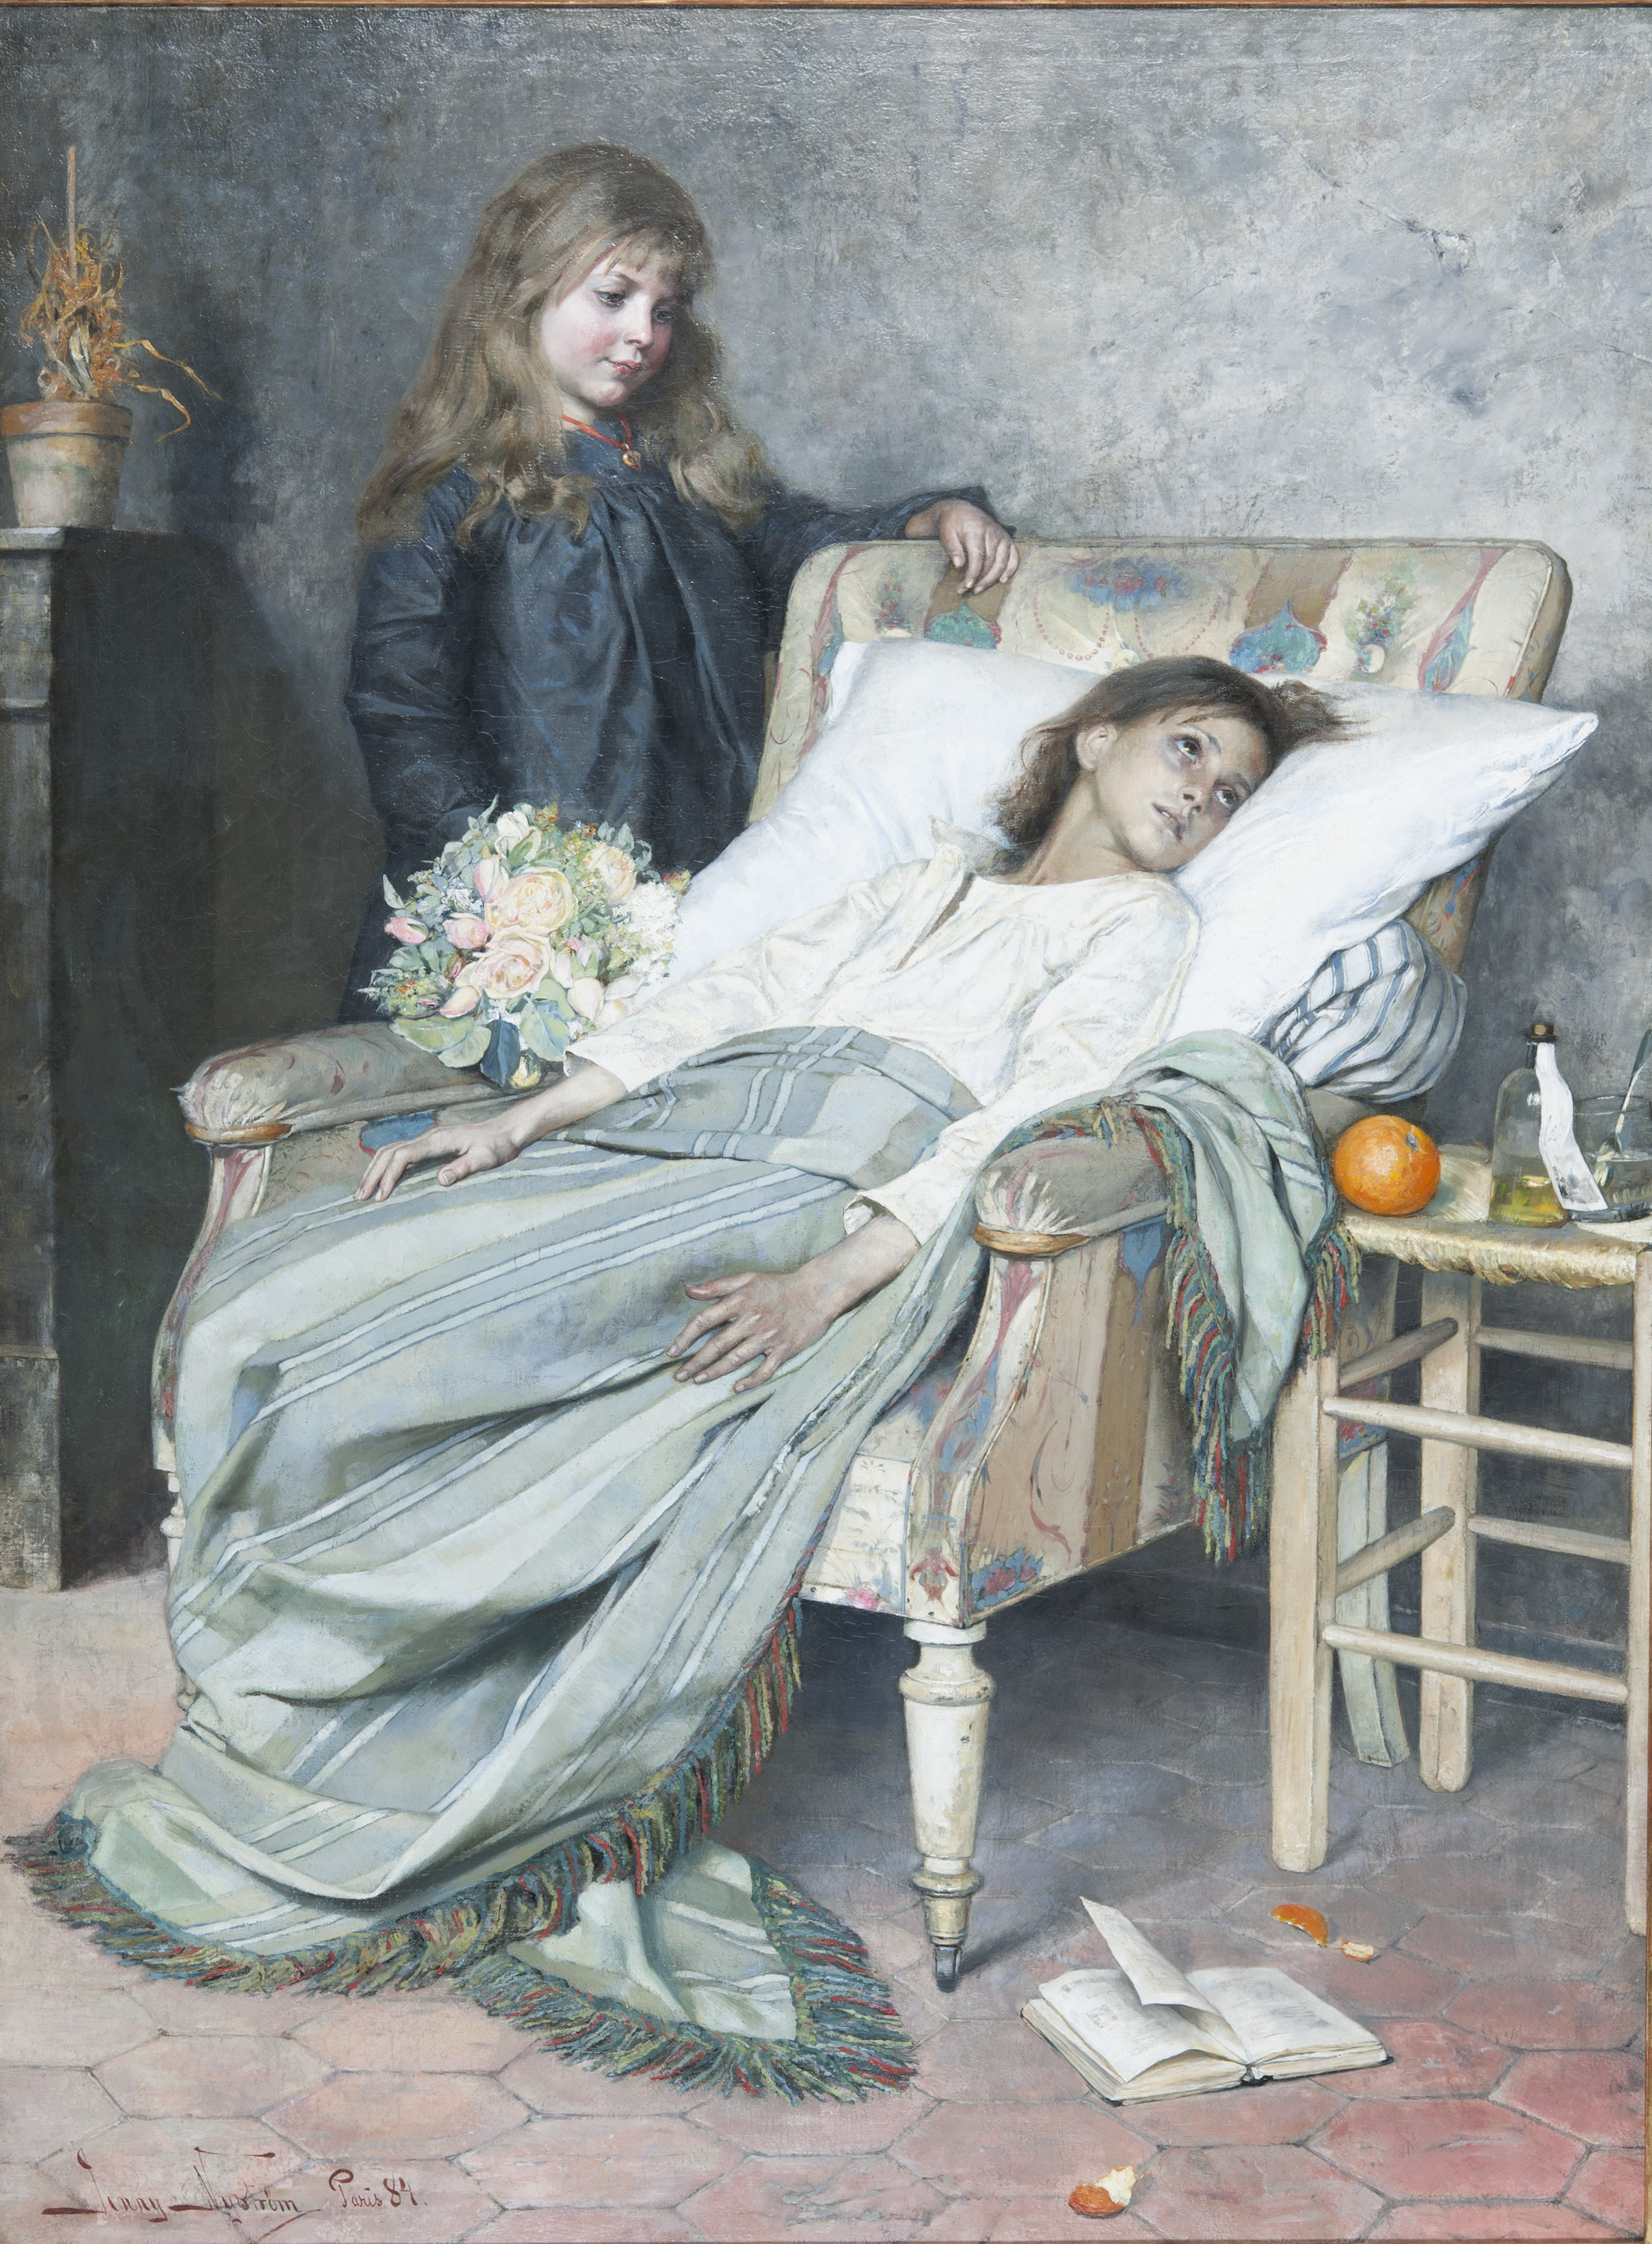 İyileşen Hasta by Jenny Nyström - 1884 - 154 x 115 cm 